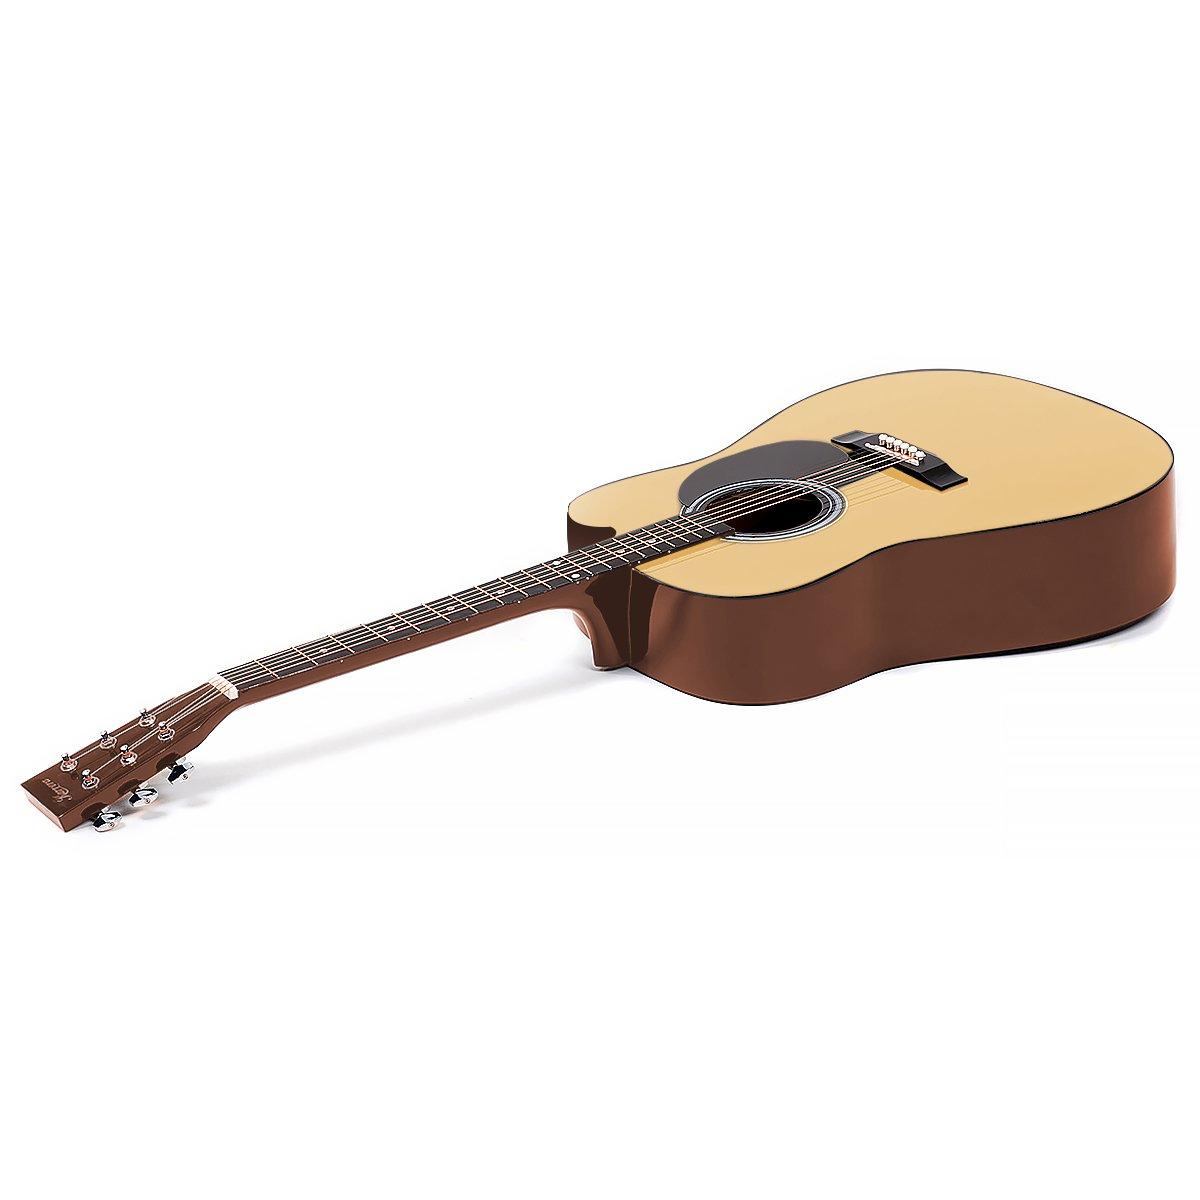 Karrera 38in Pro Cutaway Acoustic Guitar with guitar bag - Natural - SILBERSHELL